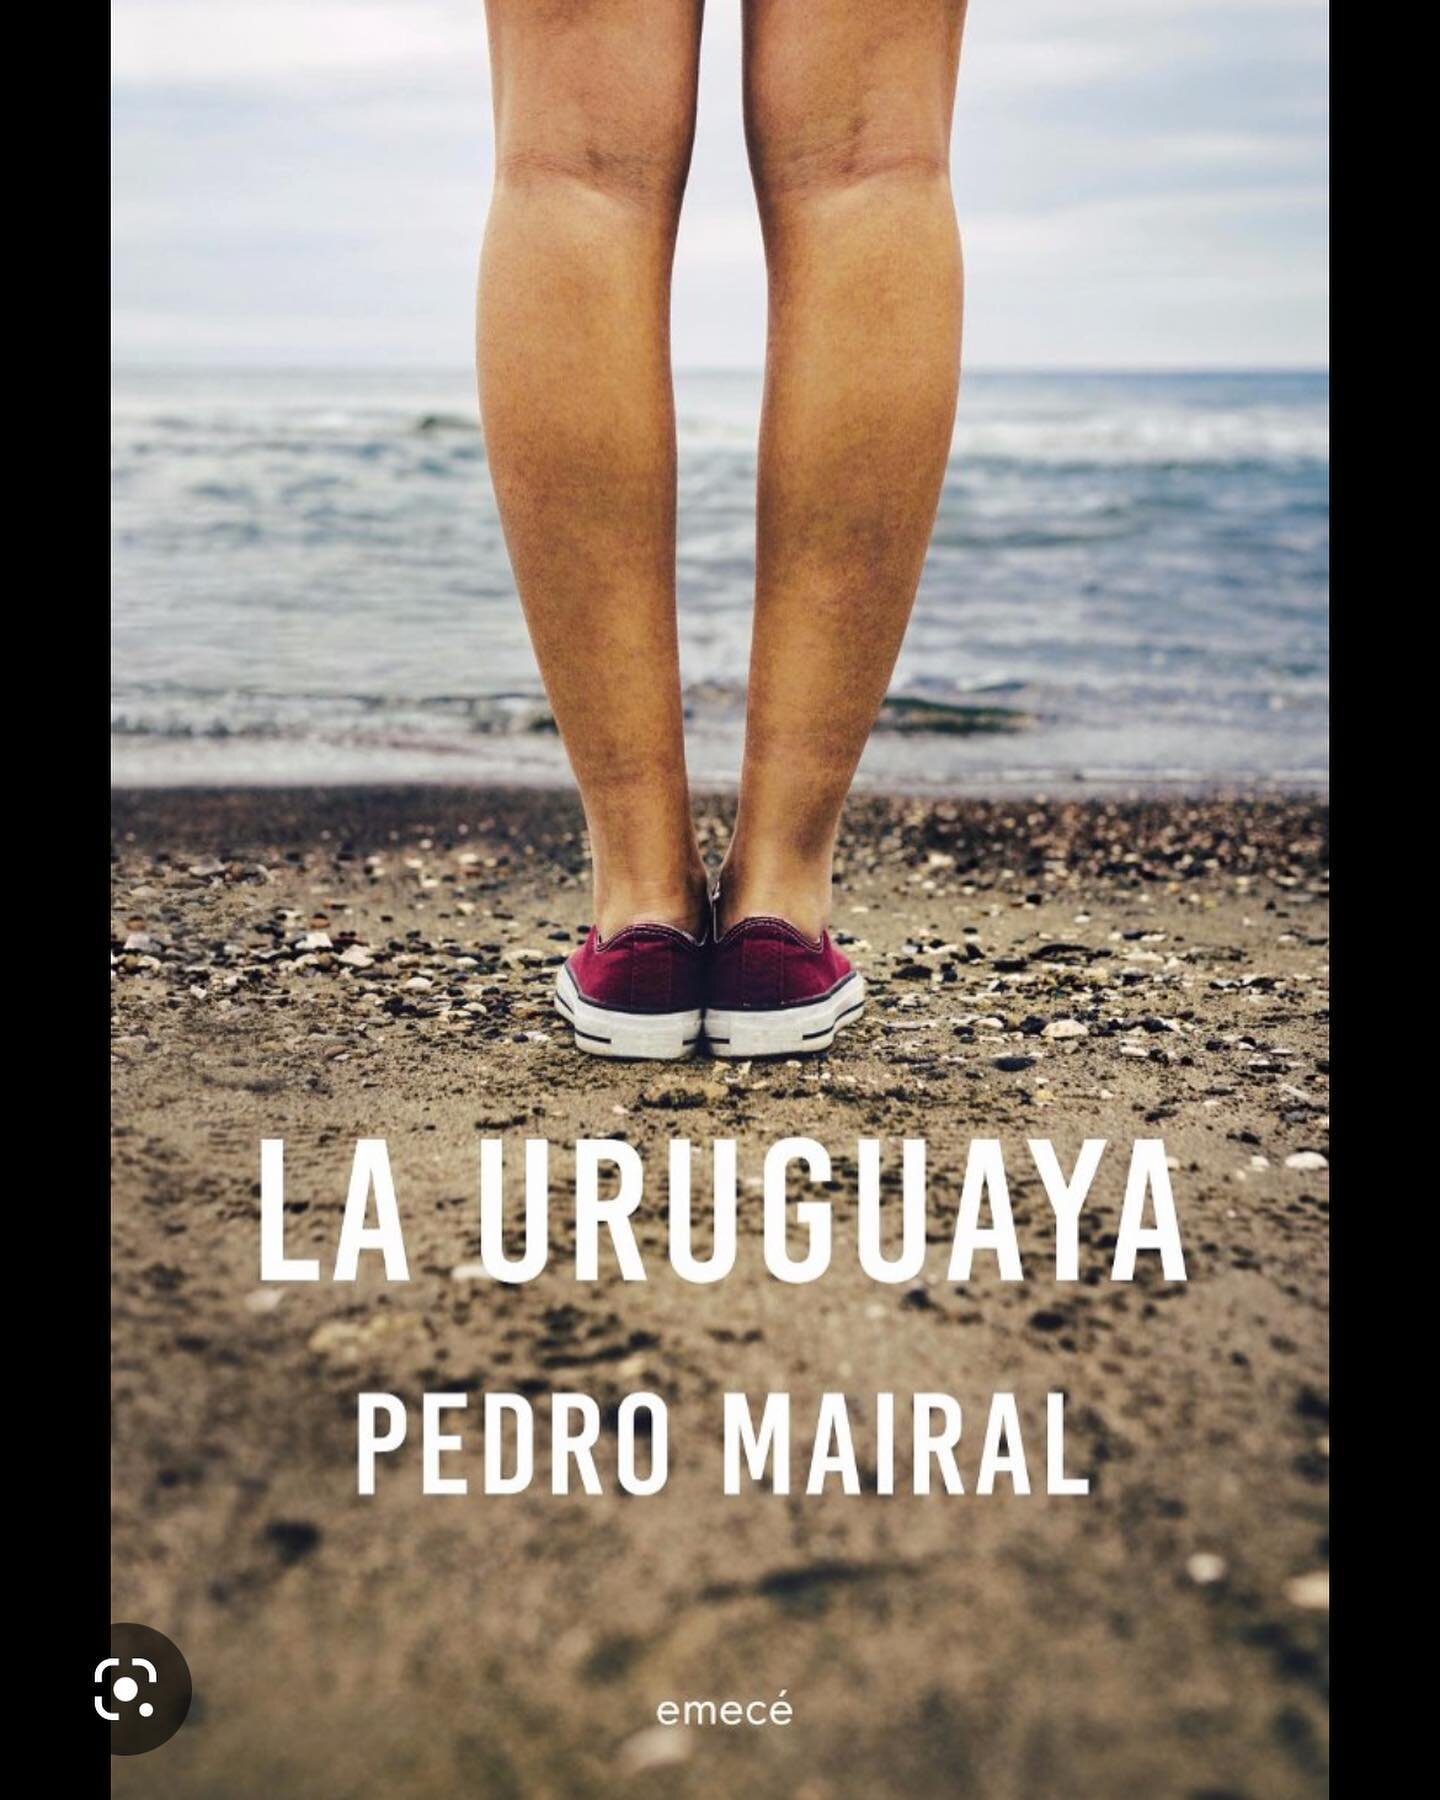 La Uruguaya, Pedro Mairal (Buenos Aires, 1970)

Me encant&oacute; esta novela corta que rompe con la idea equivocada de que una historia para ser buena, debe ser larga y profunda. Su protagonista Pereyra viaja desde la Argentina al Uruguay para cobra